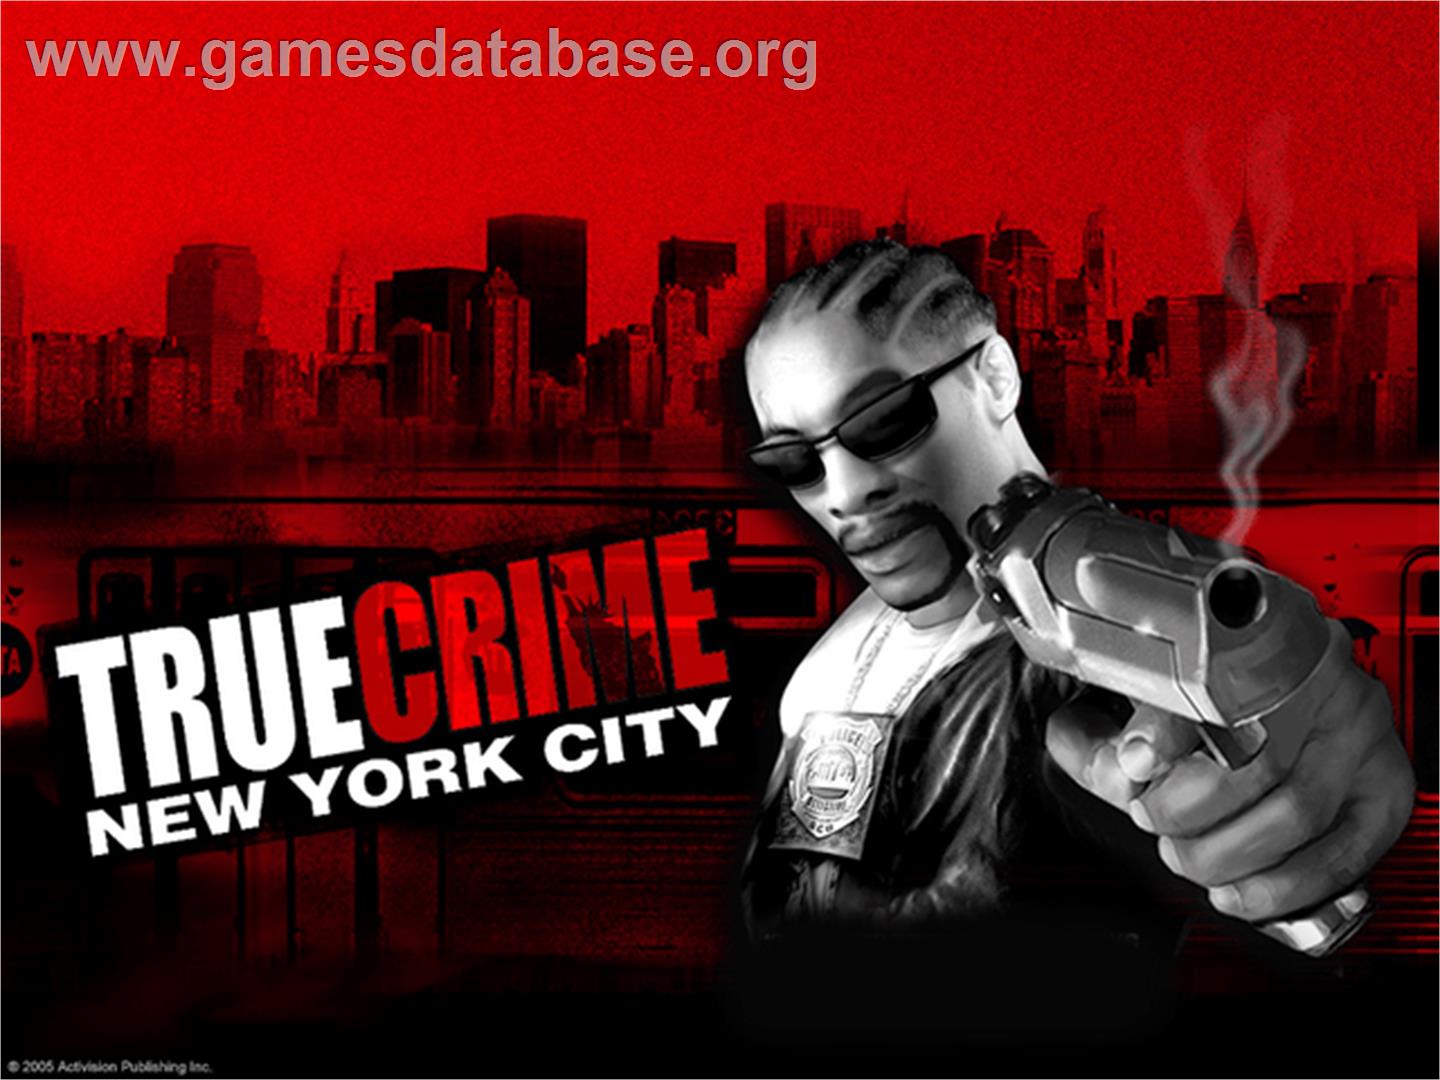 True Crime: New York City (Collector's Edition) - Microsoft Xbox - Artwork - Title Screen